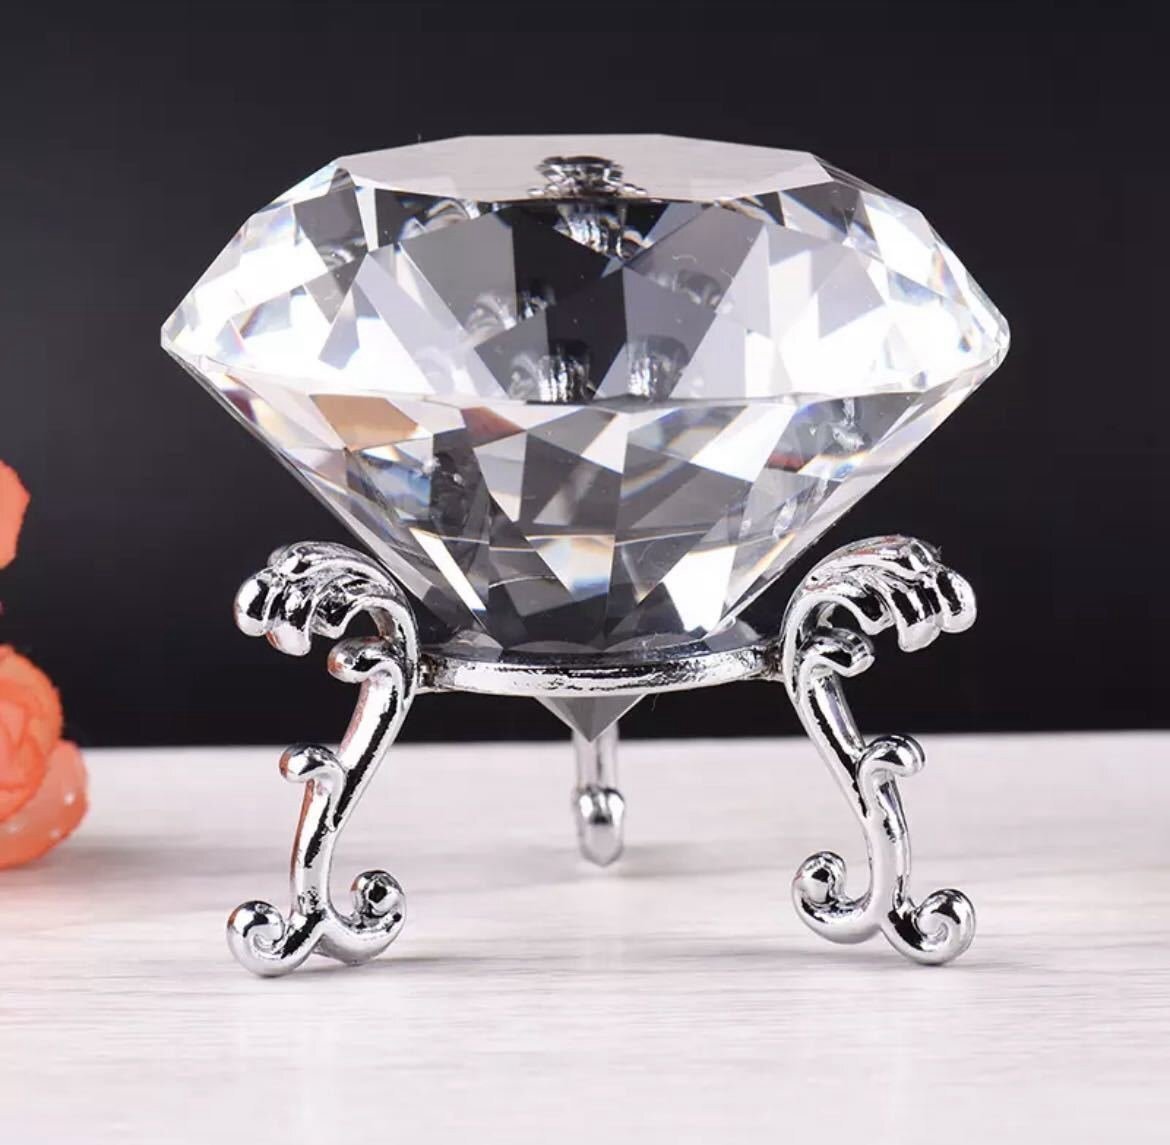 全7種類 要1種類選択 6cm 装飾 プレゼント ダイヤモンド型クリスタル ダイヤモンド クリスタル オブジェ オーナメント 置物 小物 HD469_画像3